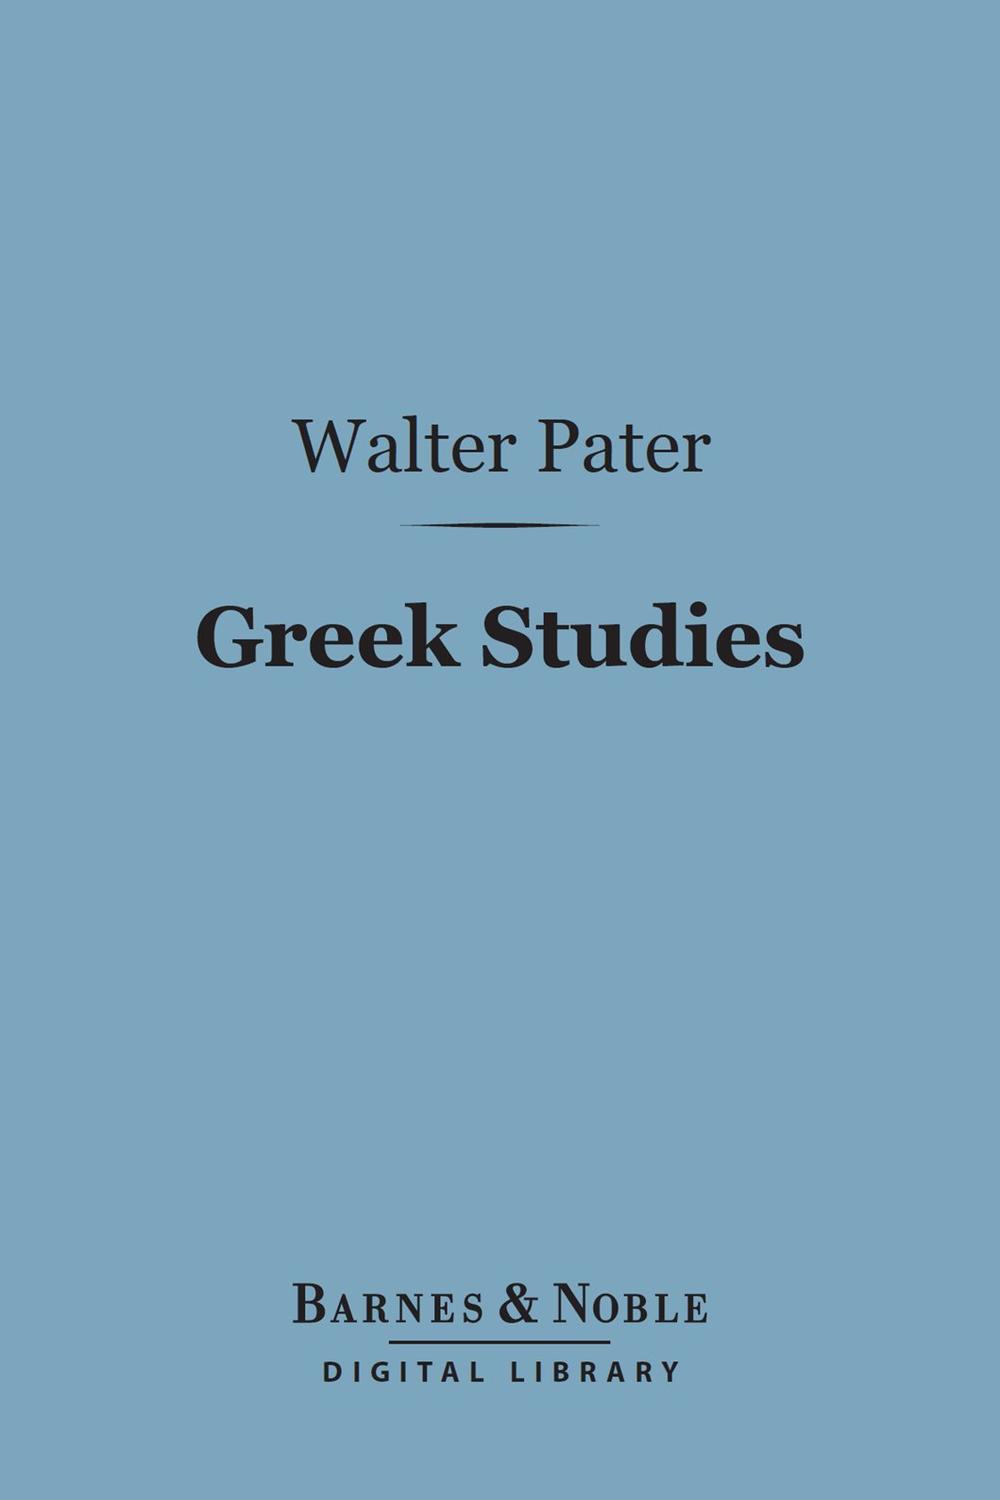 Greek Studies (Barnes & Noble Digital Library) - Walter Pater